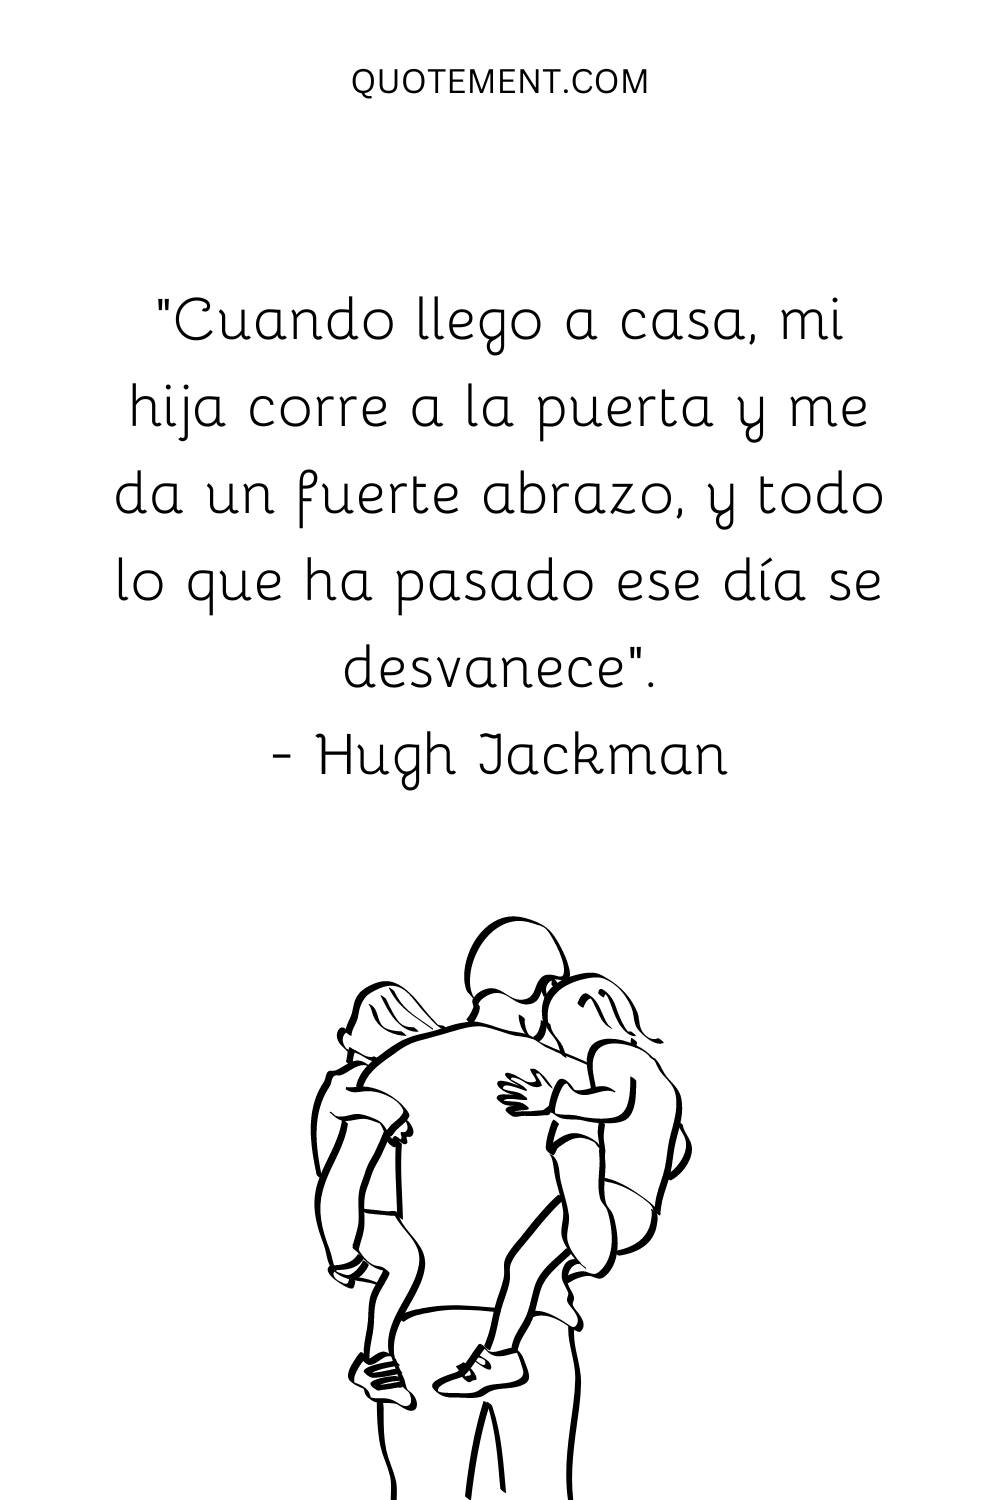 "Cuando llego a casa, mi hija corre a la puerta y me da un fuerte abrazo, y todo lo que ha pasado ese día se desvanece". - Hugh Jackman